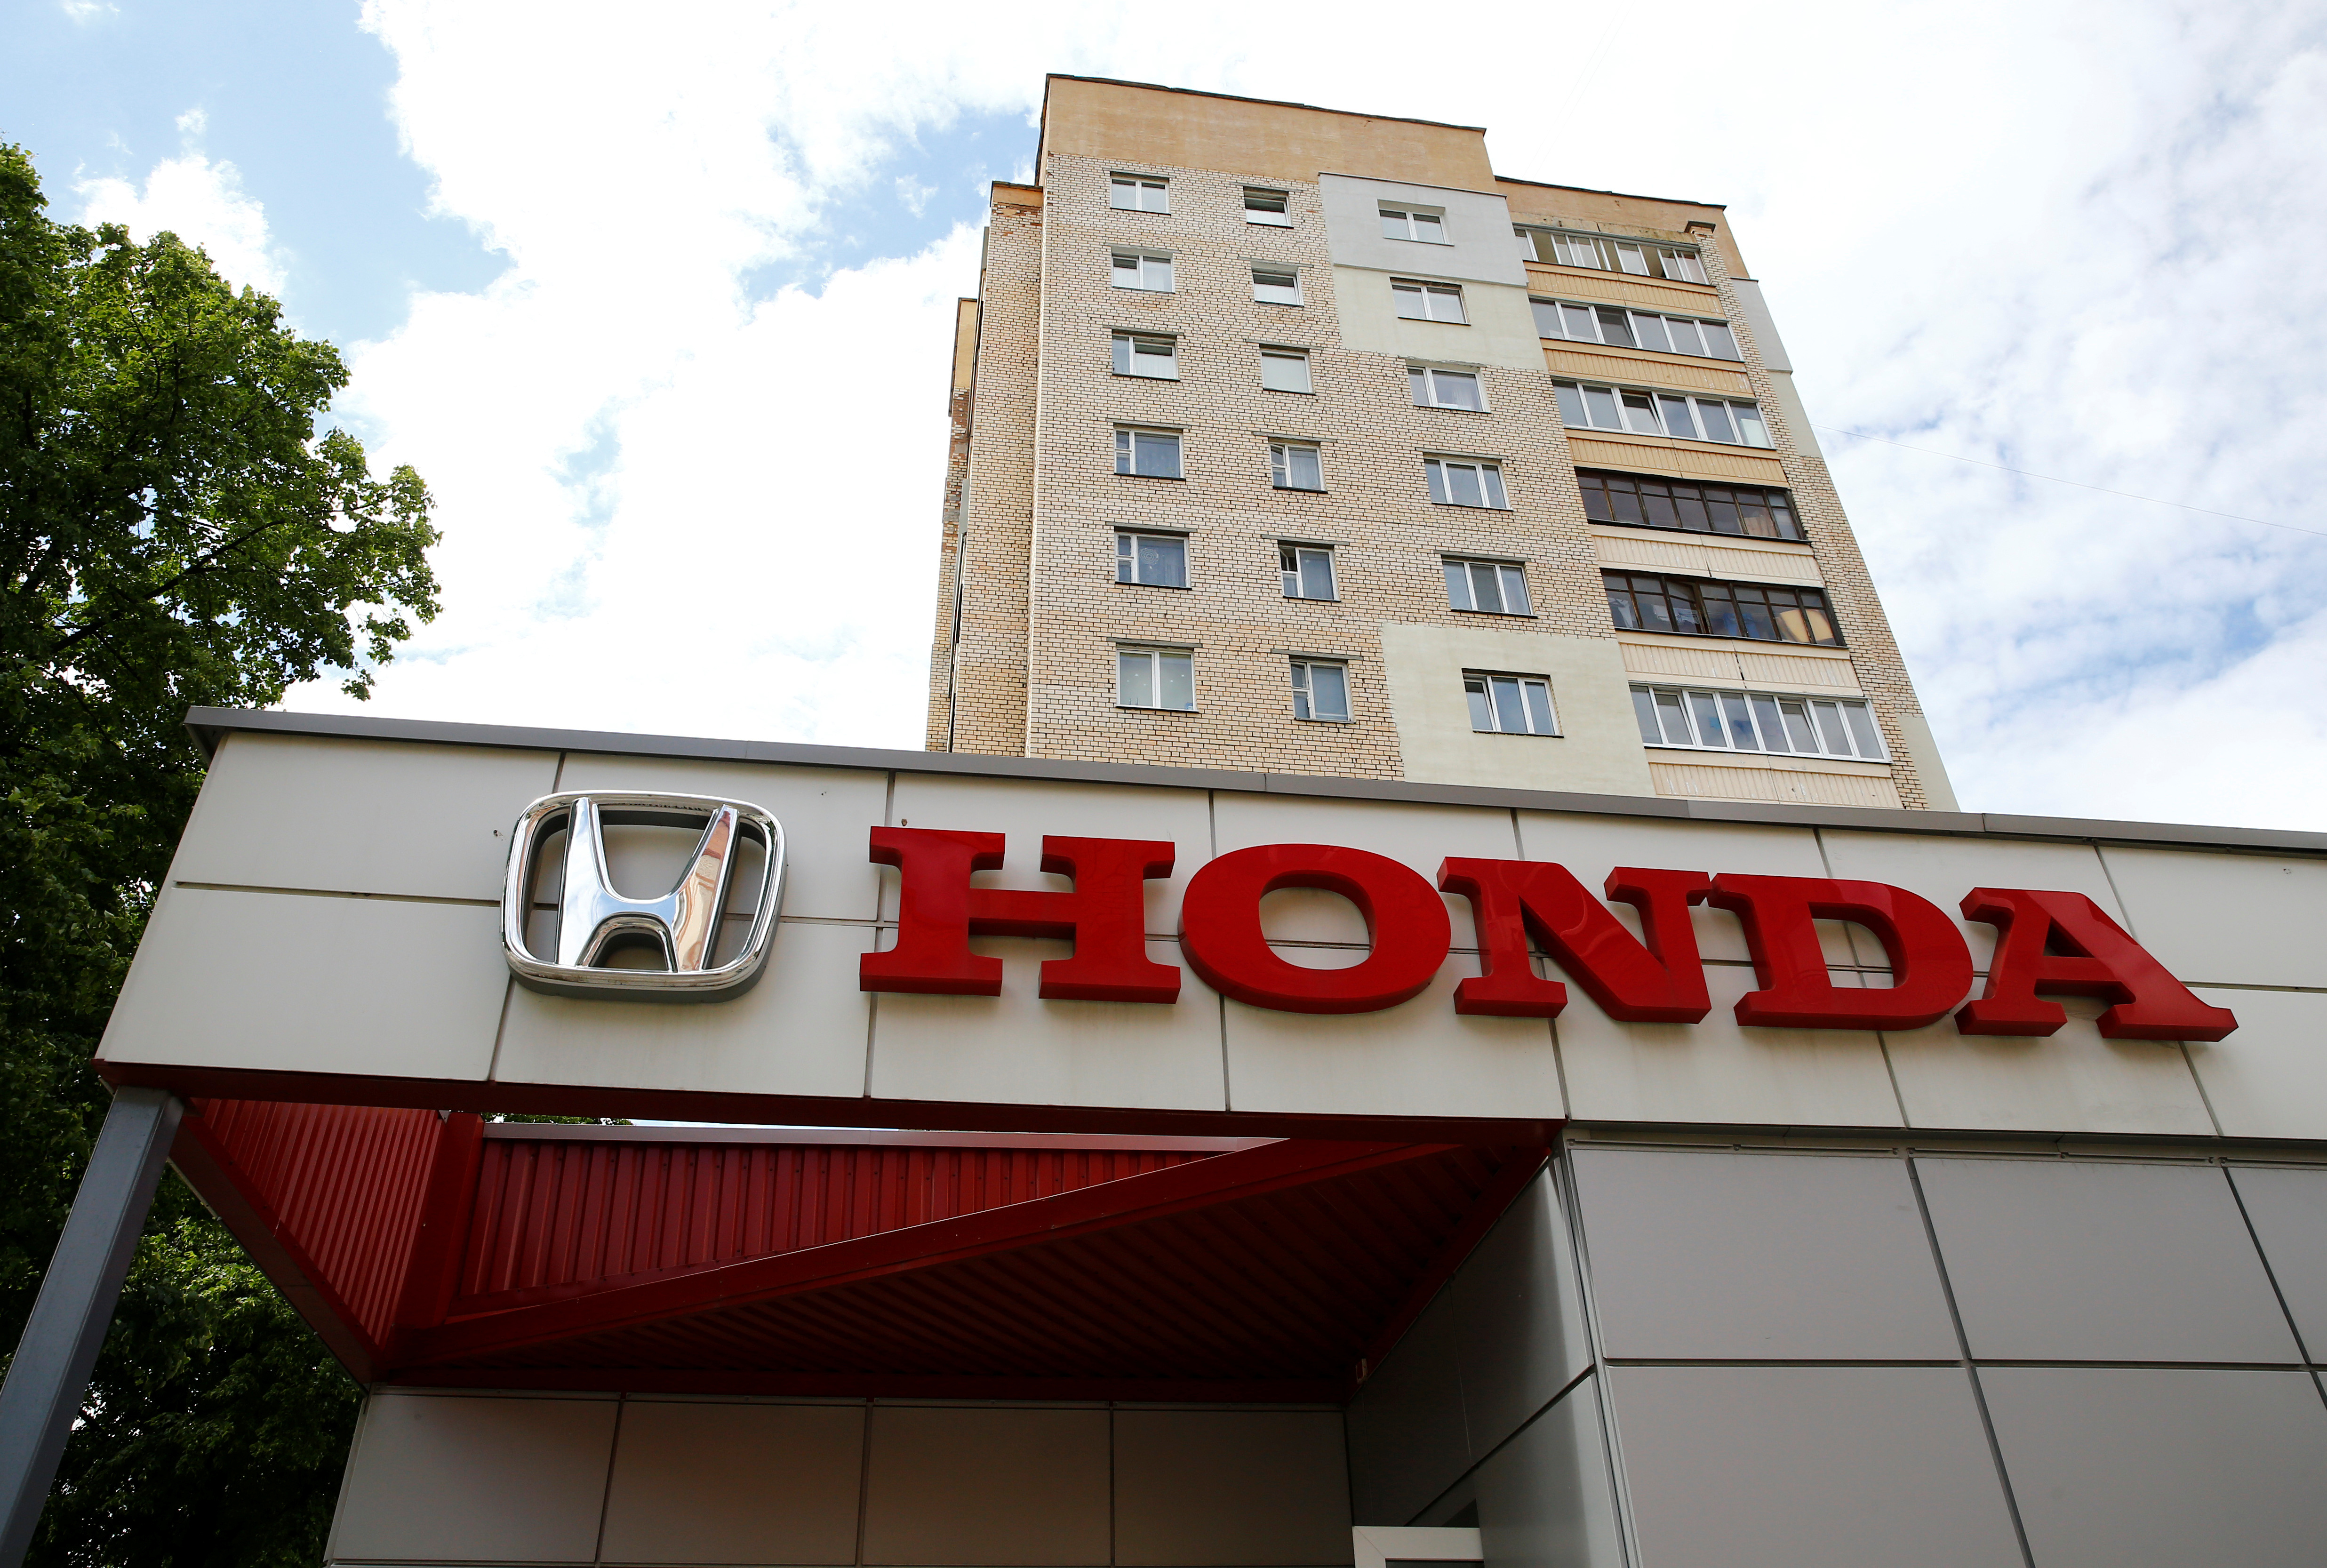 Honda car company logo is seen on a building in Minsk